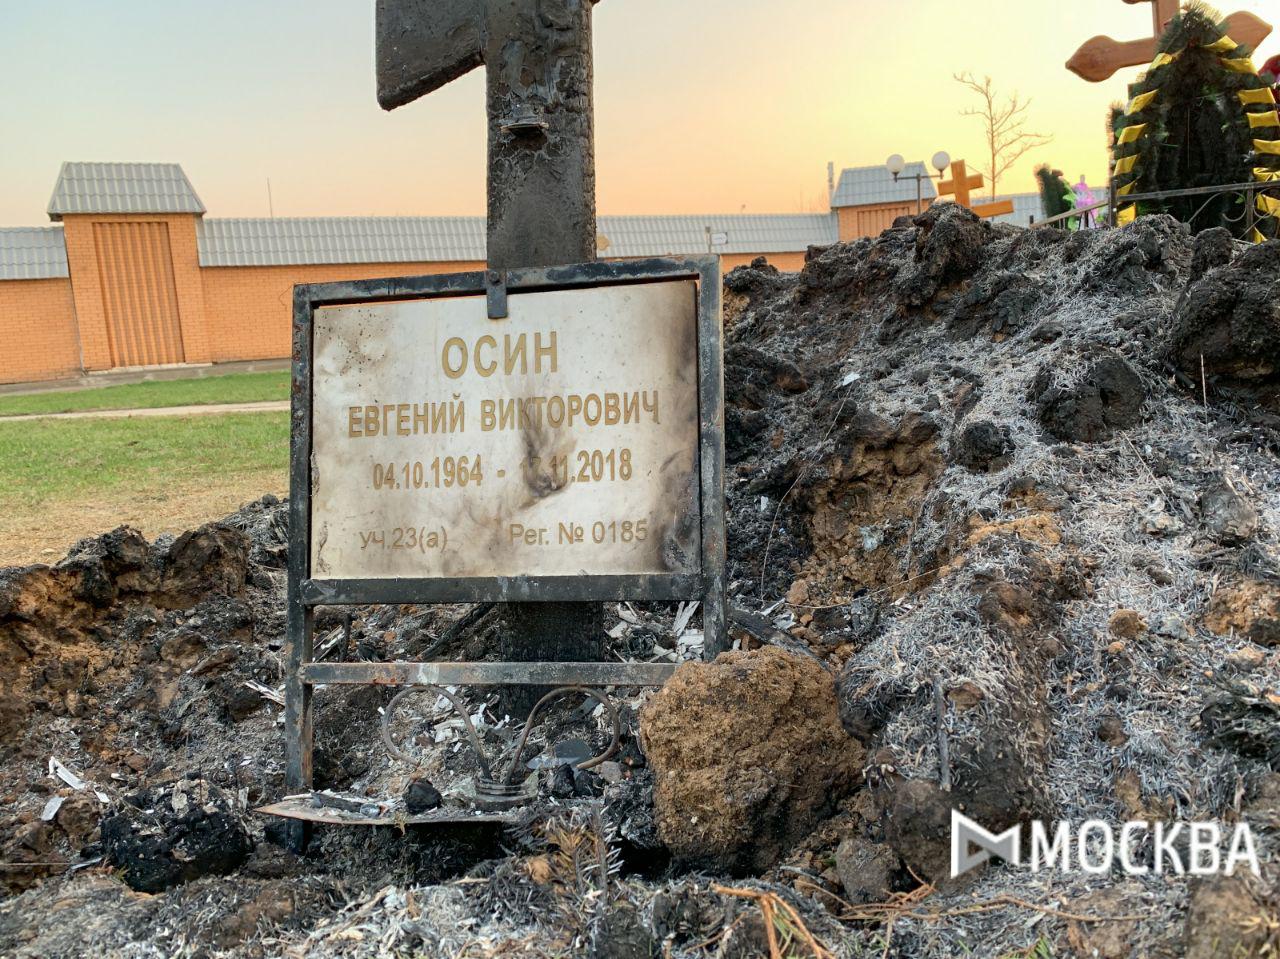 После пожара на могиле Осина